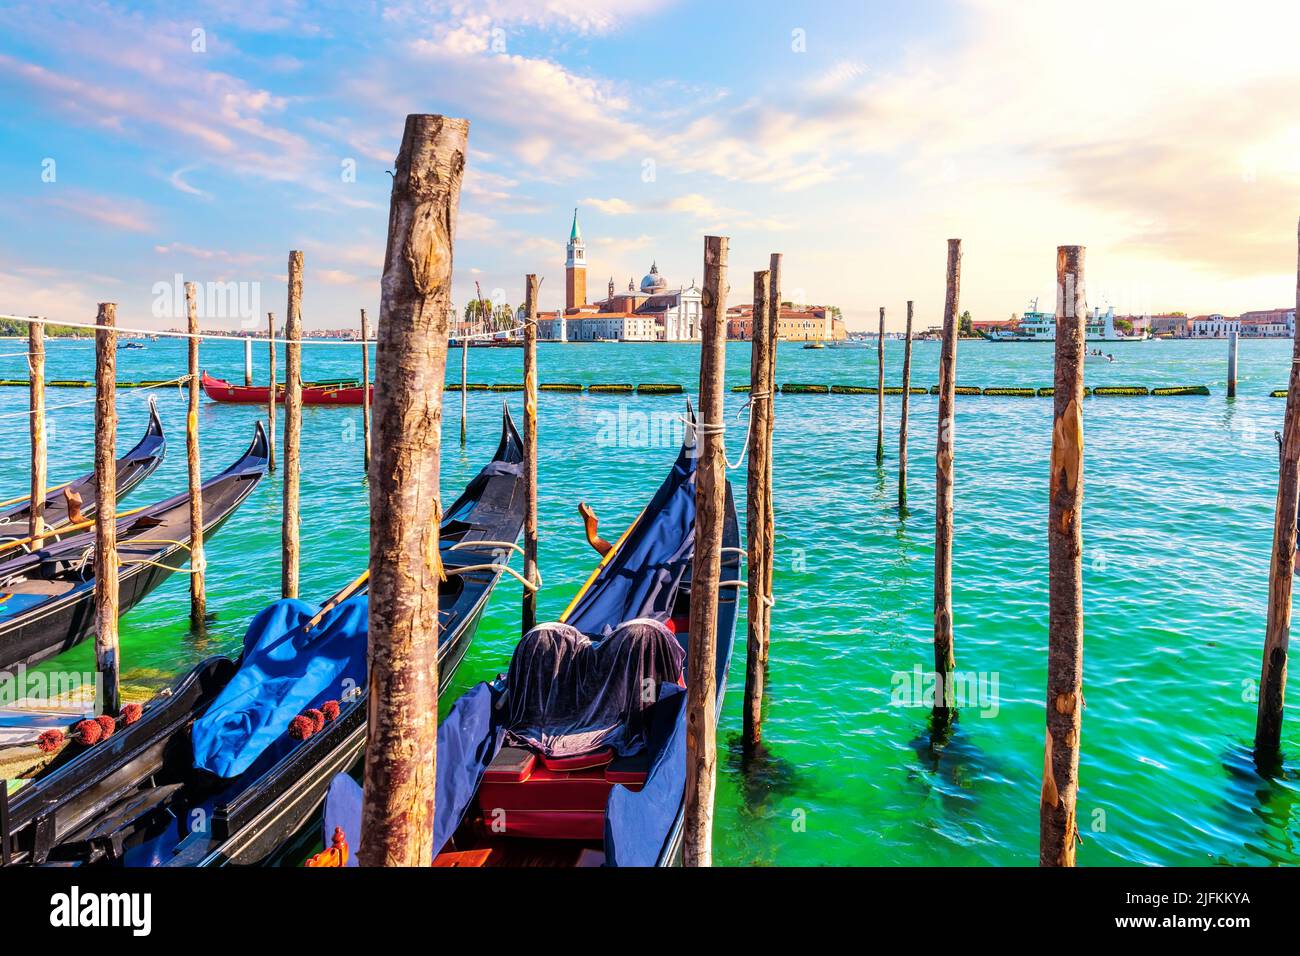 San Giorgio Maggiore Island and traditional Gondolas moored in the Grand Canal, Venice, Italy. Stock Photo